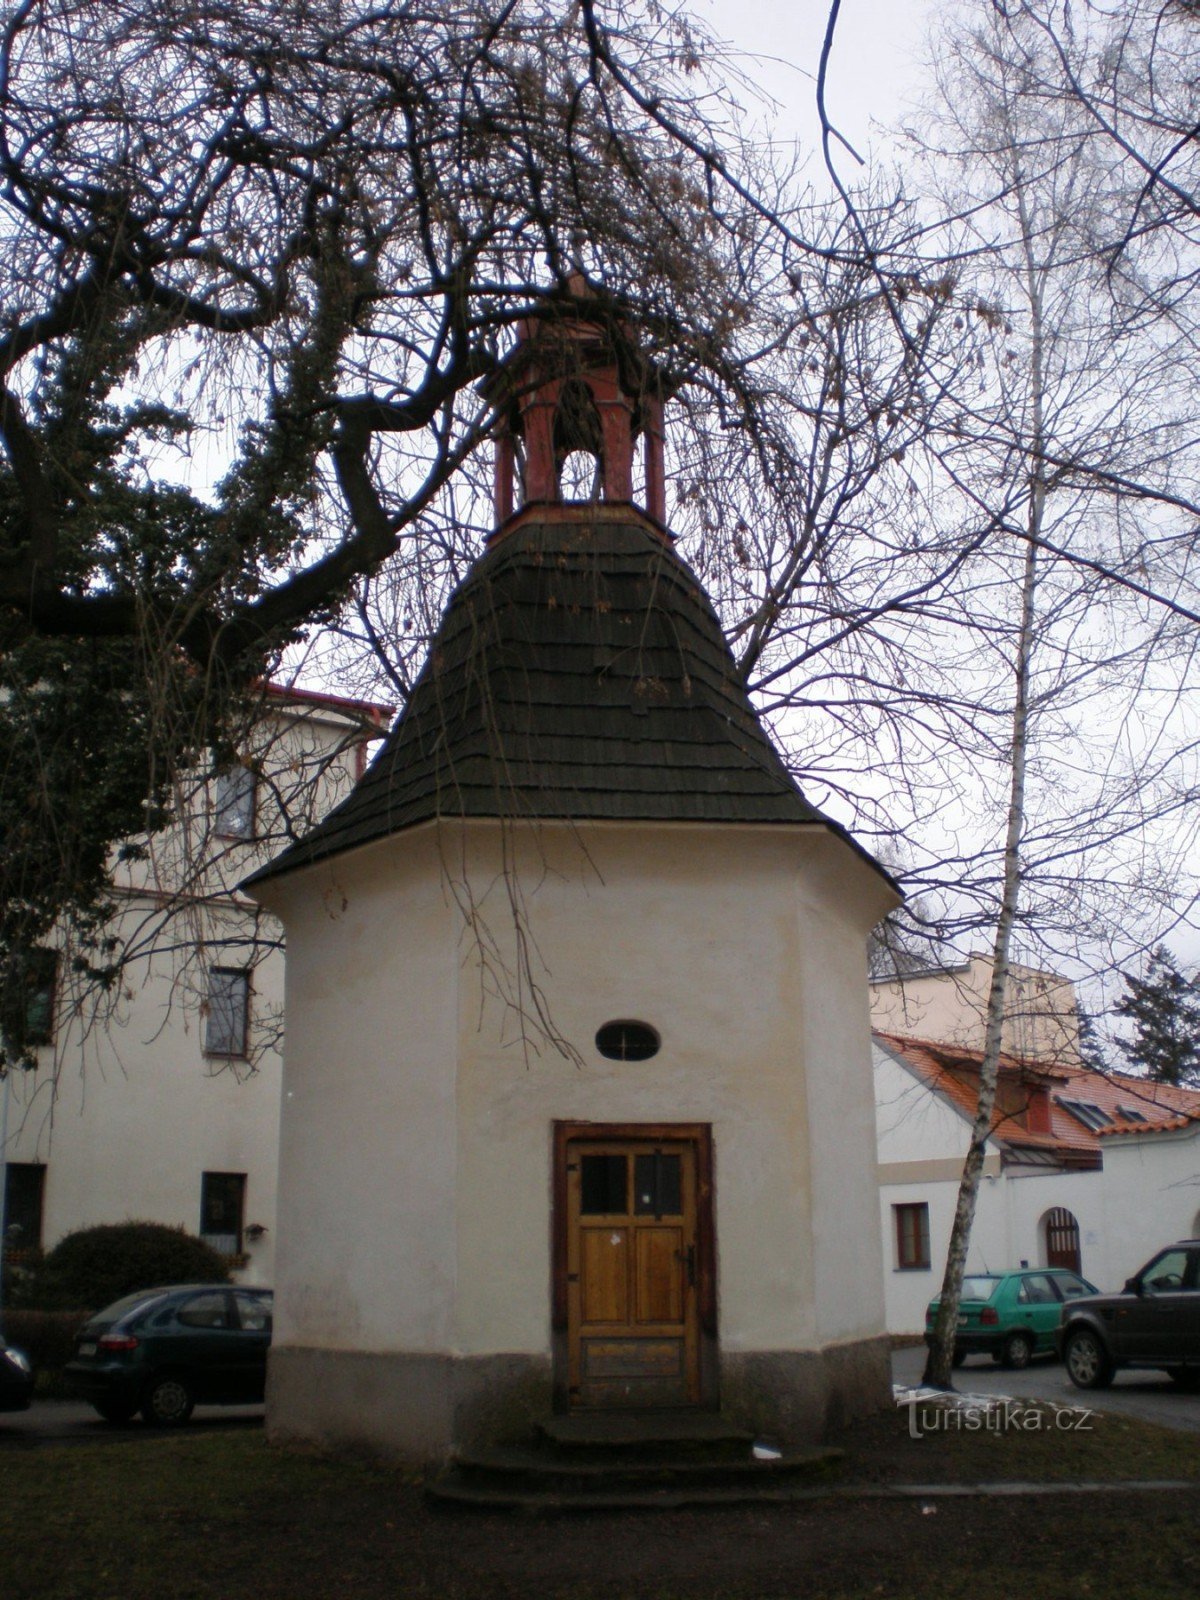 Horní Počernice - nhà nguyện trên Quảng trường Křovin